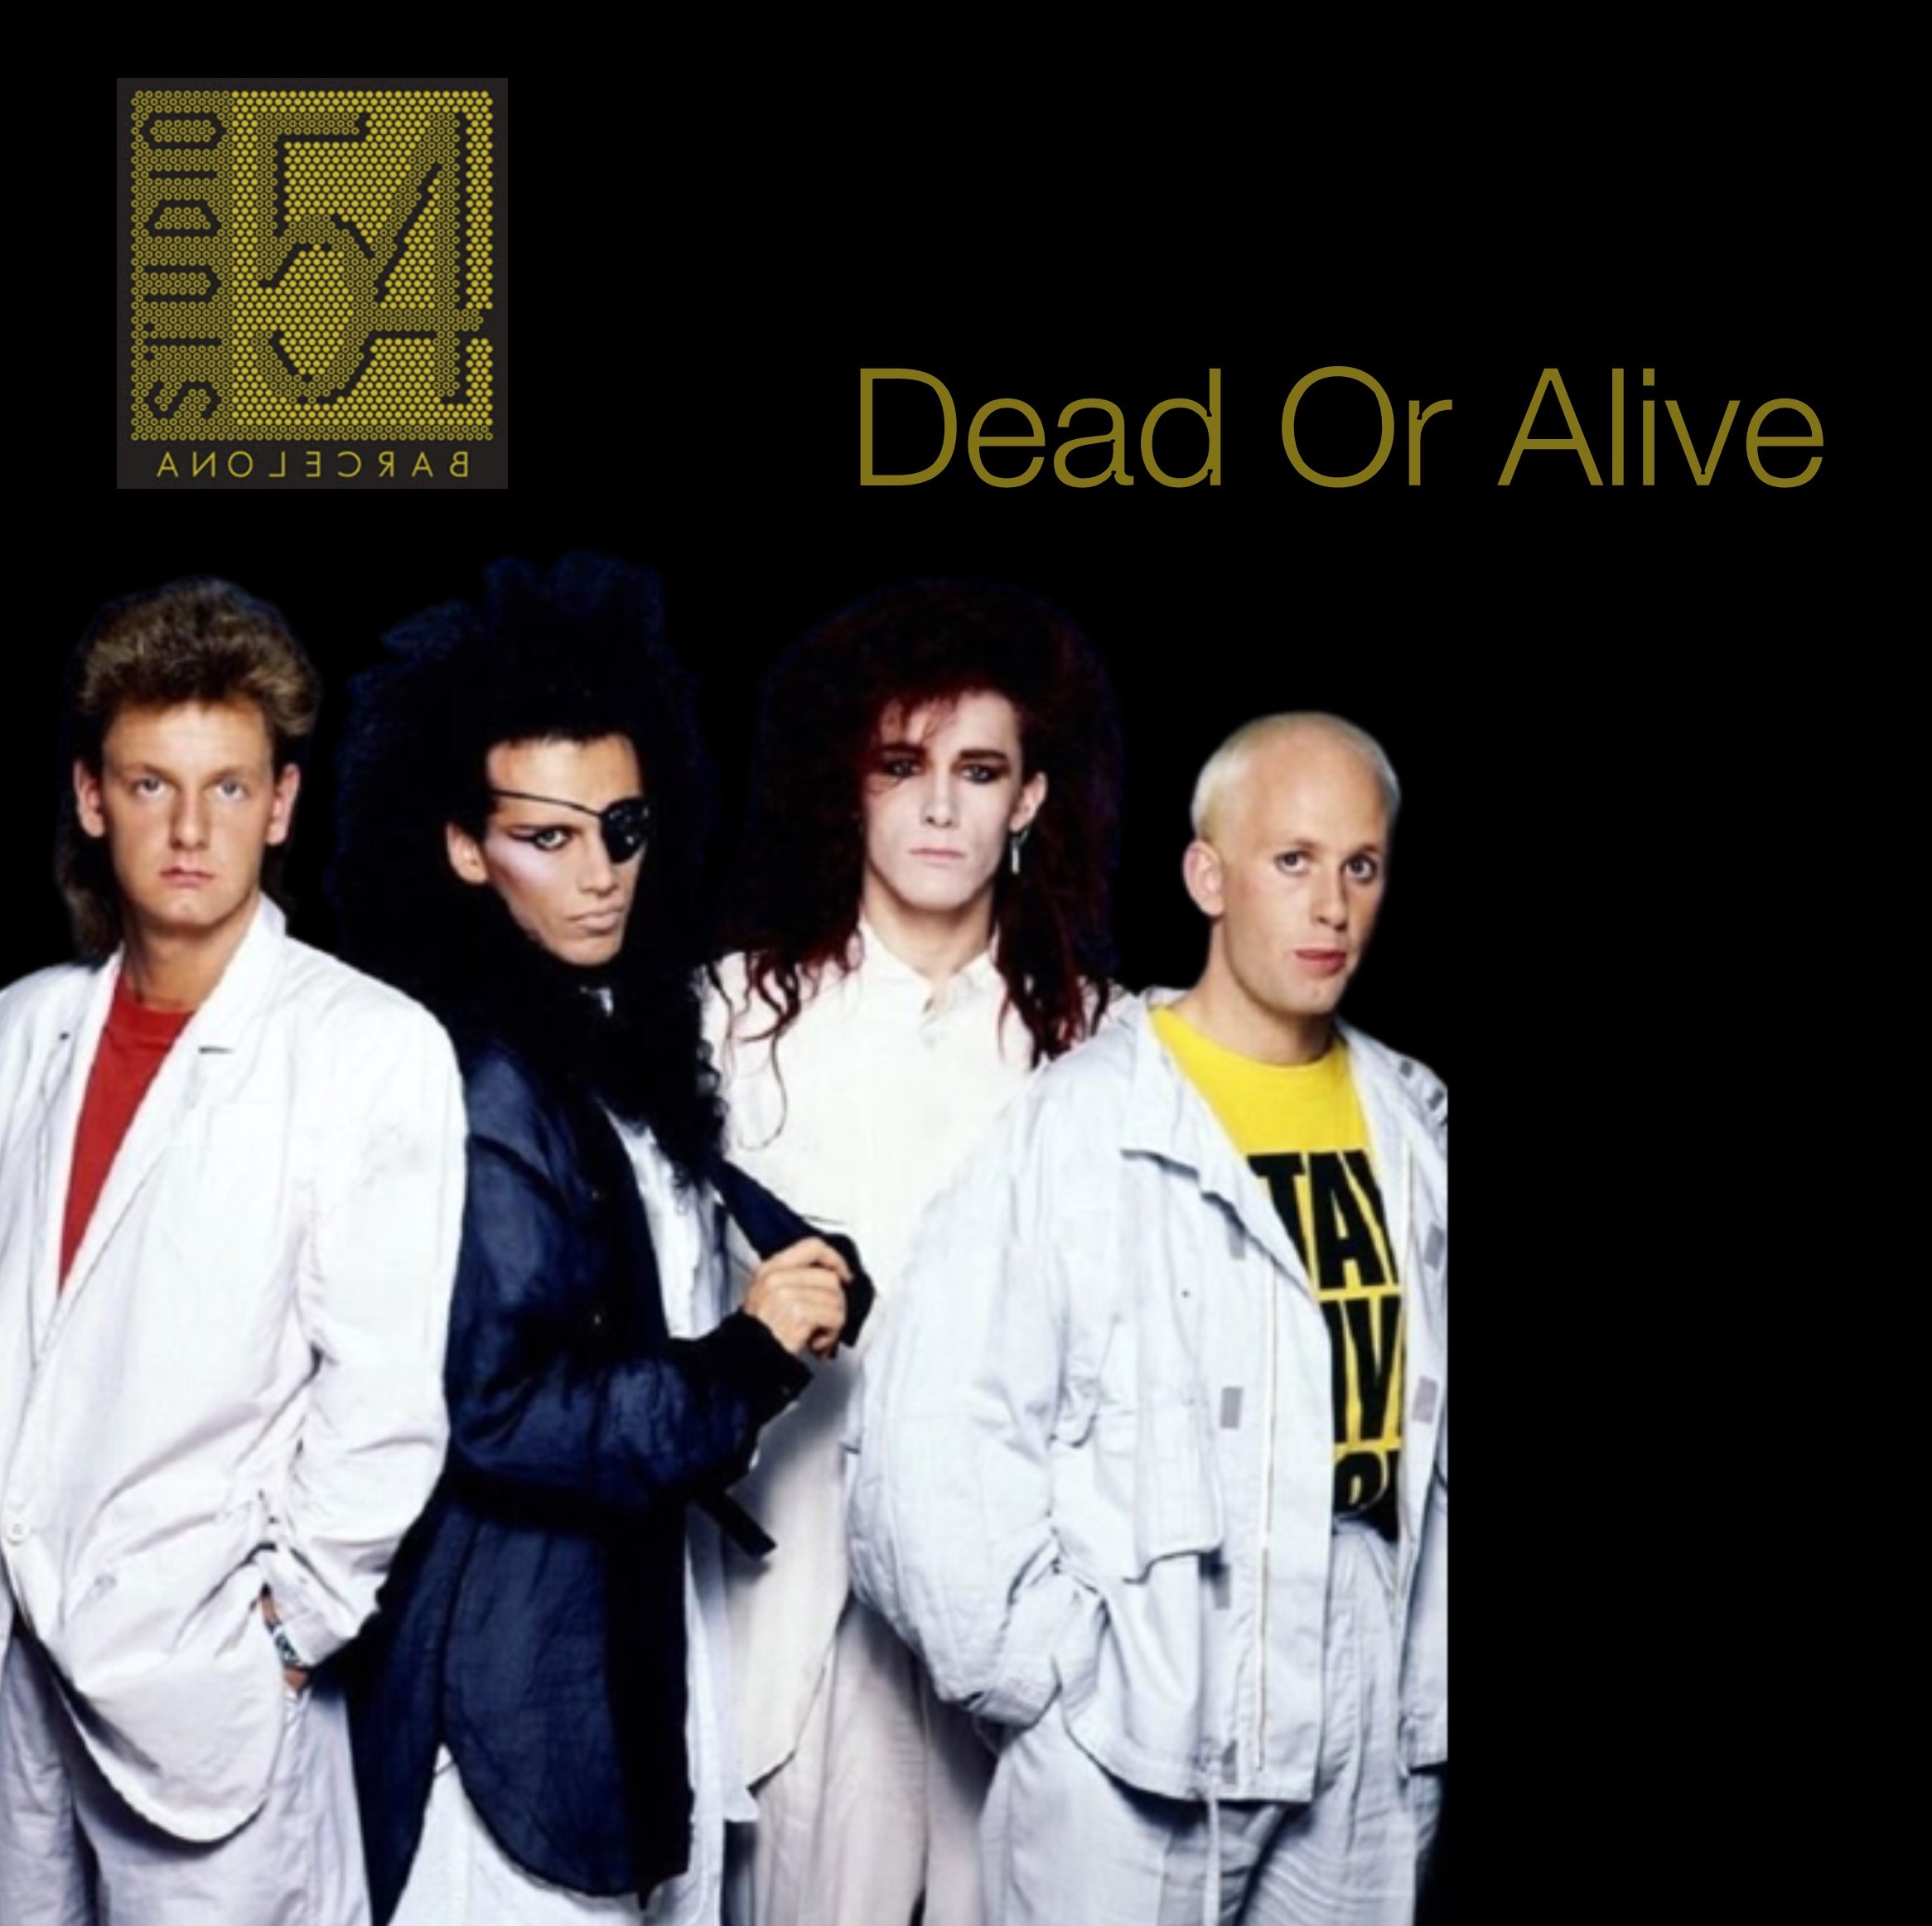 Dead or Alive -  Studio 54 Barcelona - Topdisco Radio